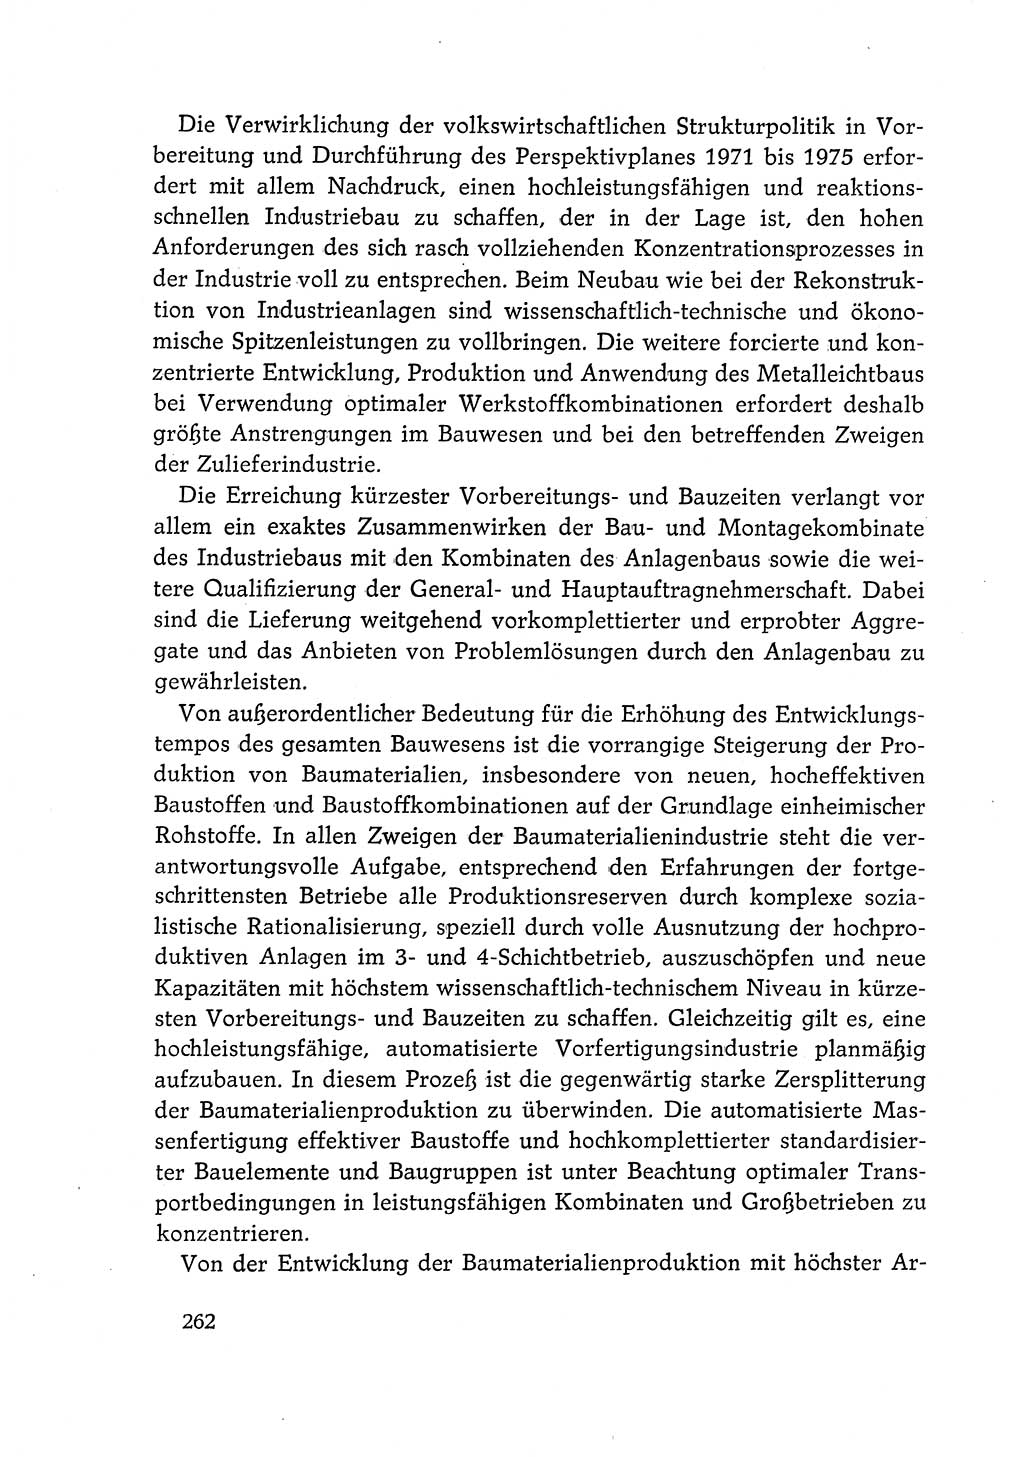 Dokumente der Sozialistischen Einheitspartei Deutschlands (SED) [Deutsche Demokratische Republik (DDR)] 1968-1969, Seite 262 (Dok. SED DDR 1968-1969, S. 262)